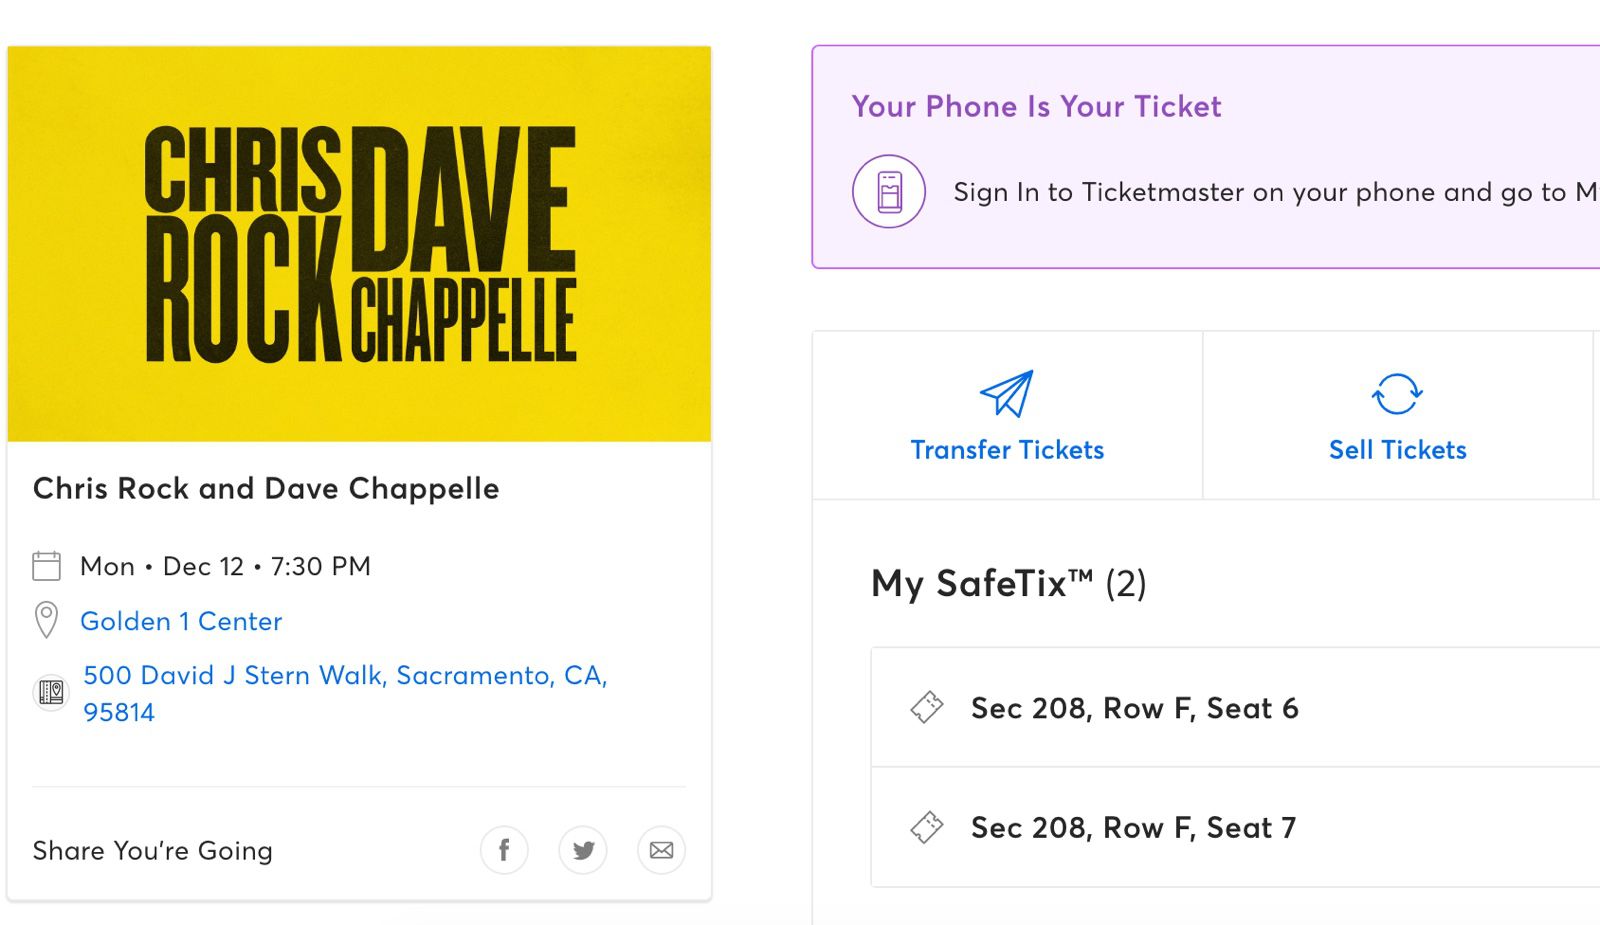 Dave Chappelle & Chris Rock @ Golden 1 Center Sacramento